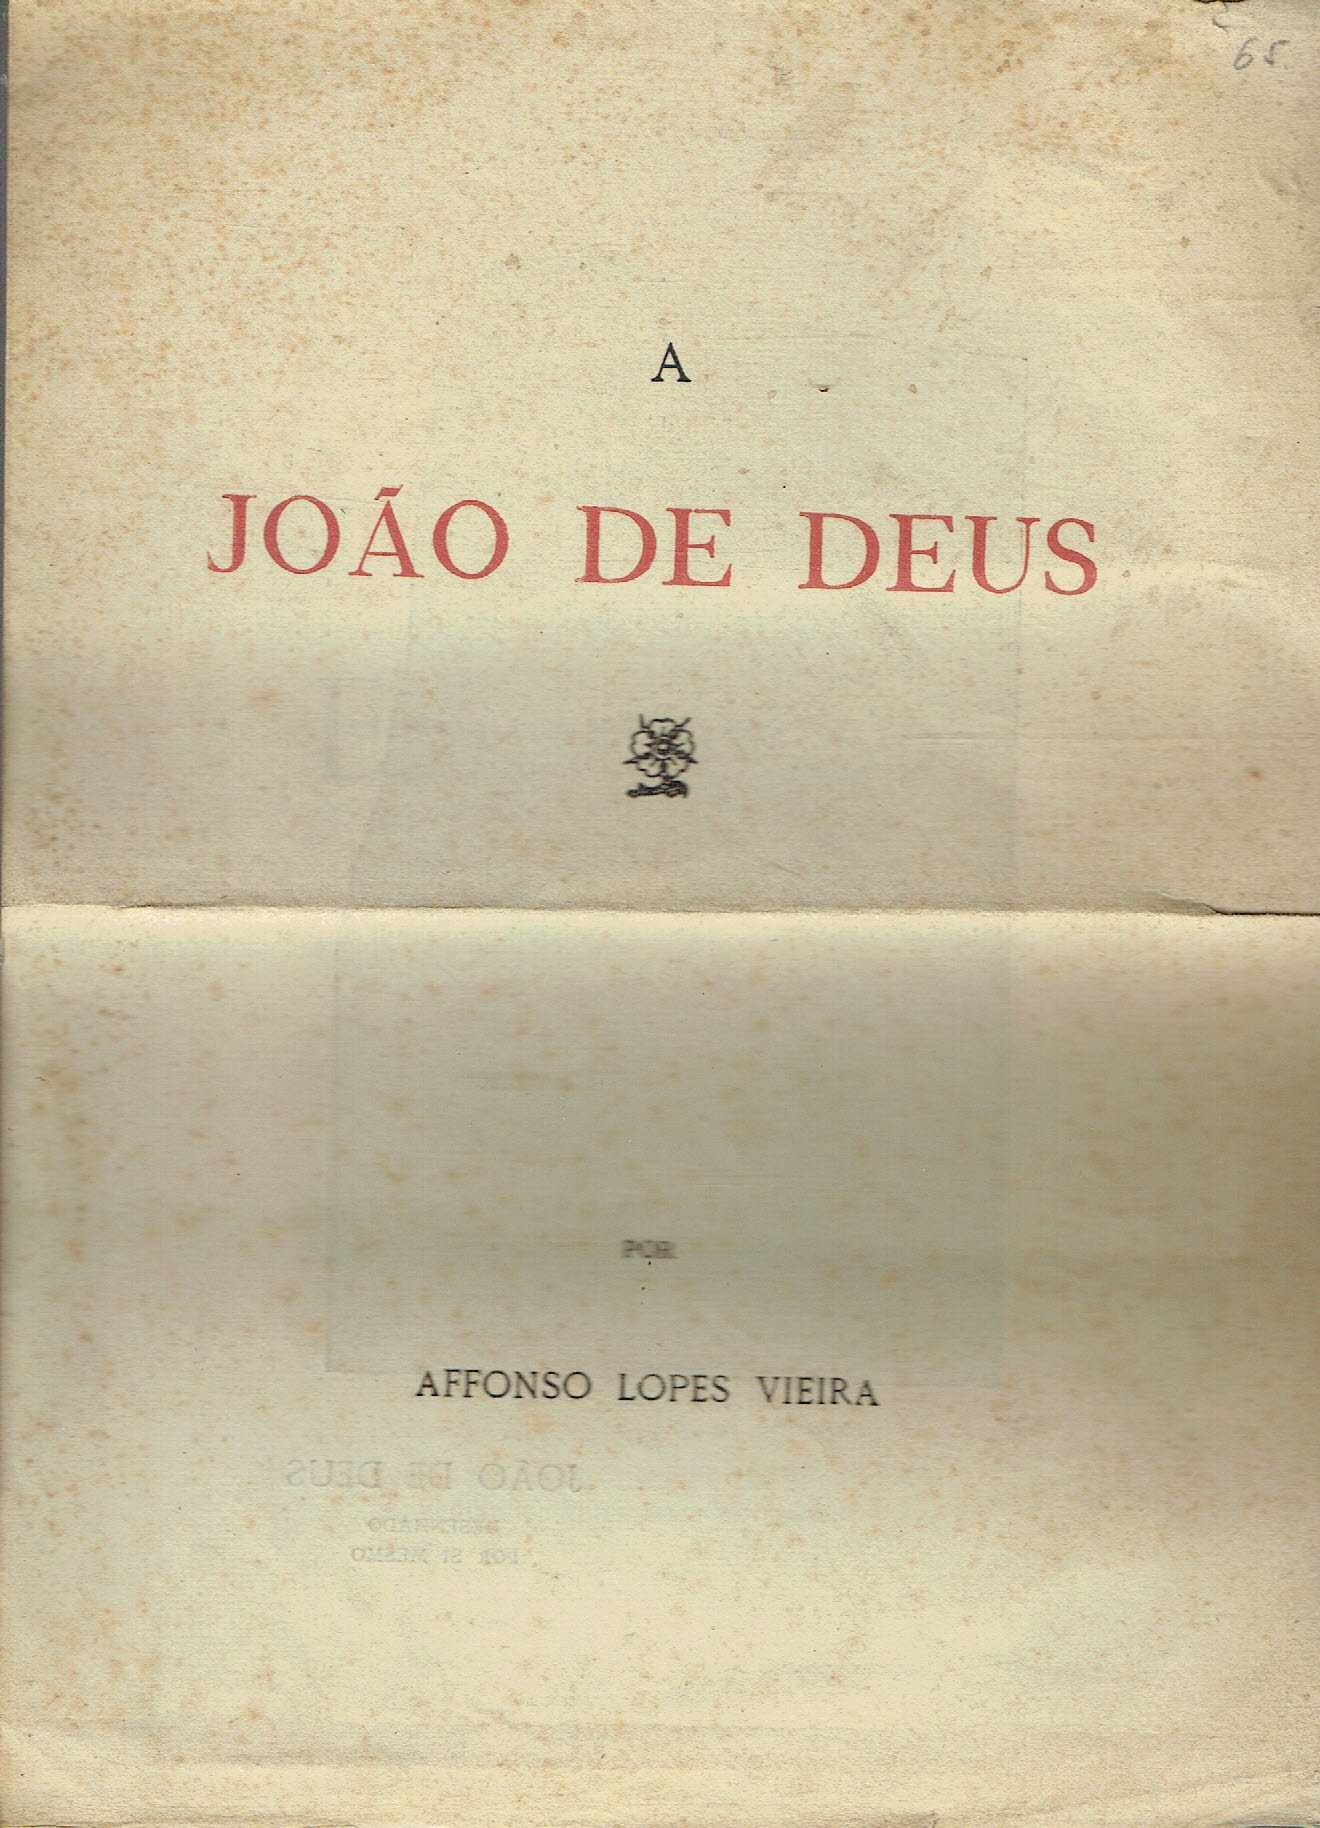 14353

A JOÃO DE DEUS
de Afonso Lopes Vieira